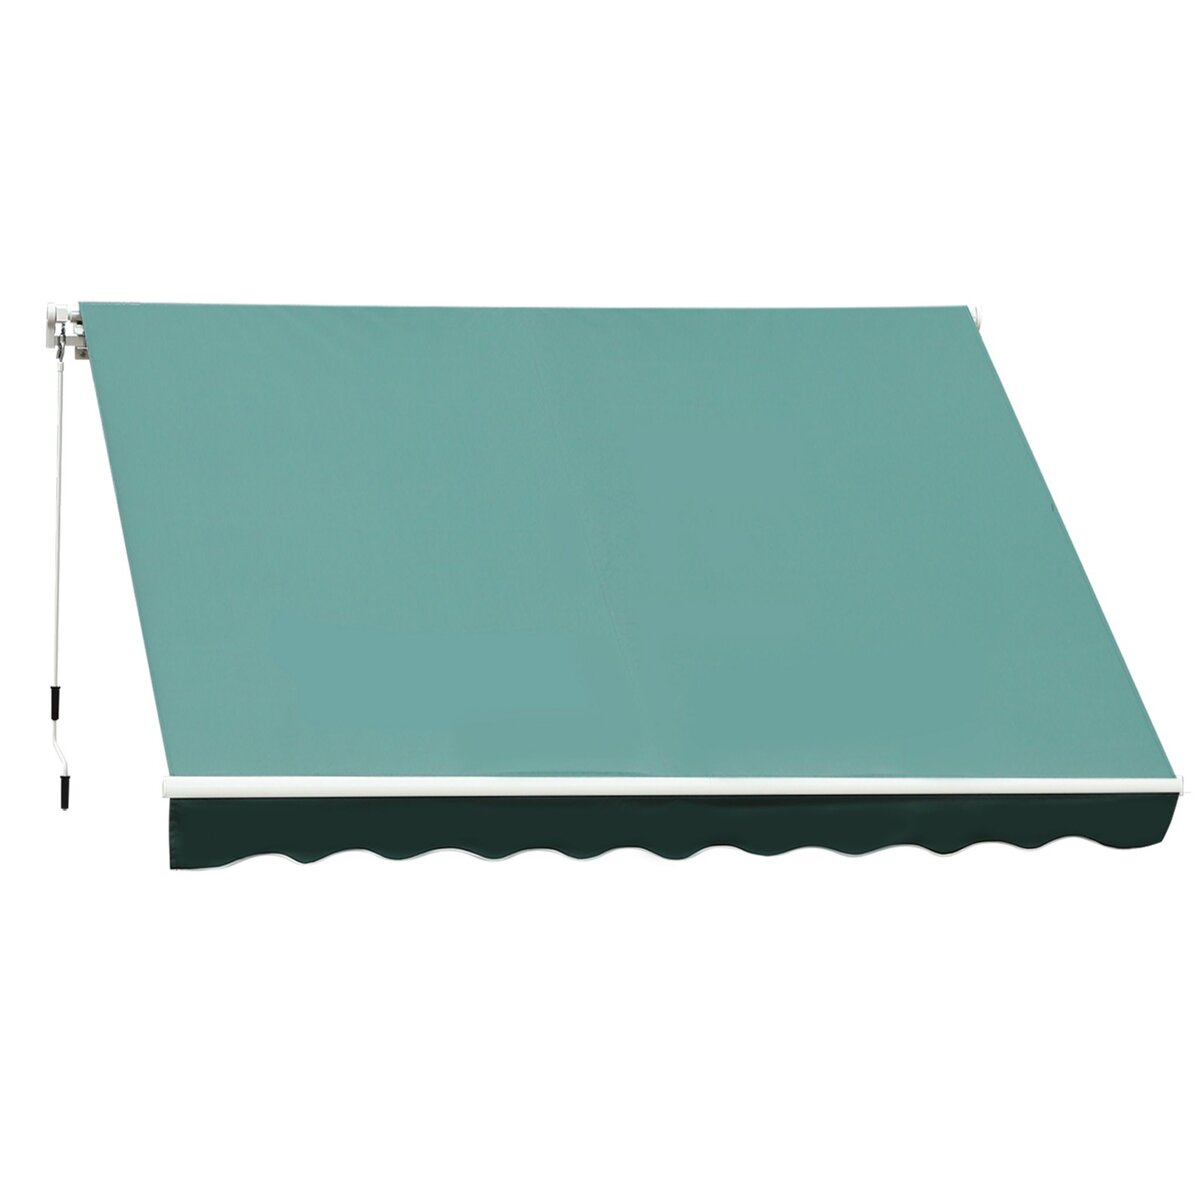 OUTSUNNY Store banne manuel rétractable aluminium polyester imperméabilisé 3L x 2,5l m vert